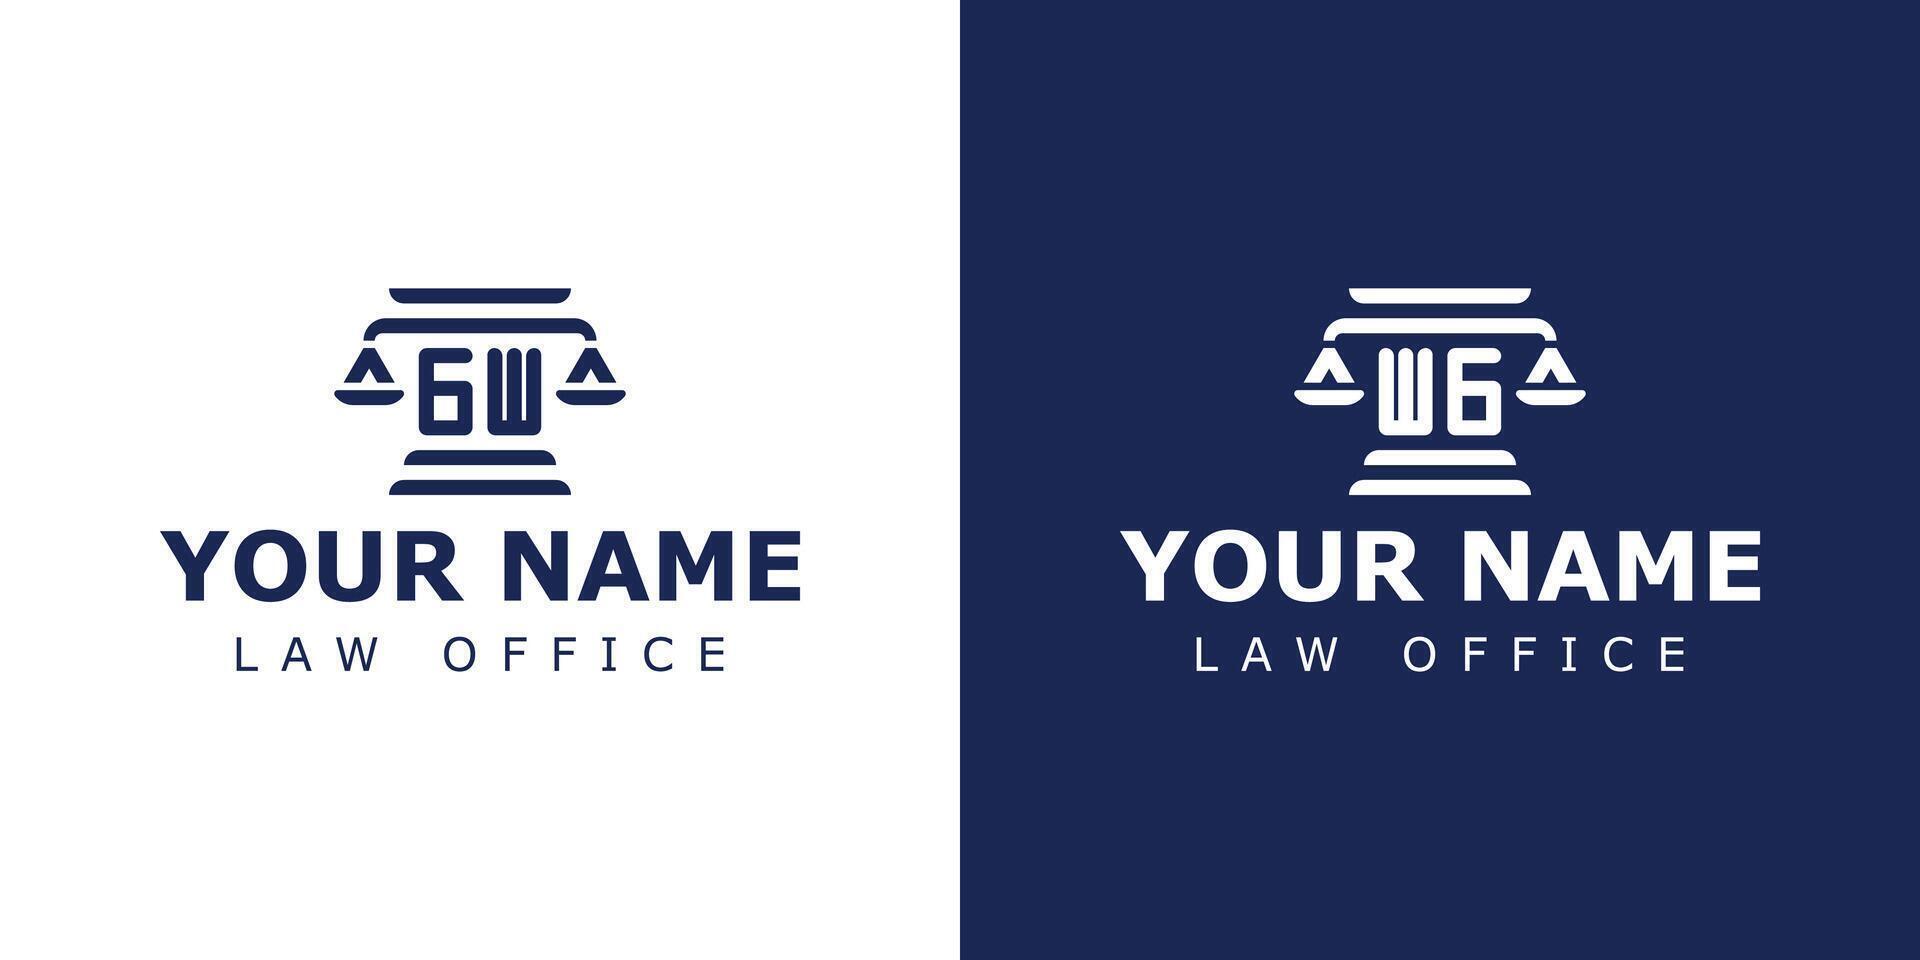 Briefe gw und wg legal Logo, geeignet zum Rechtsanwalt, legal, oder Gerechtigkeit mit gw oder wg Initialen vektor